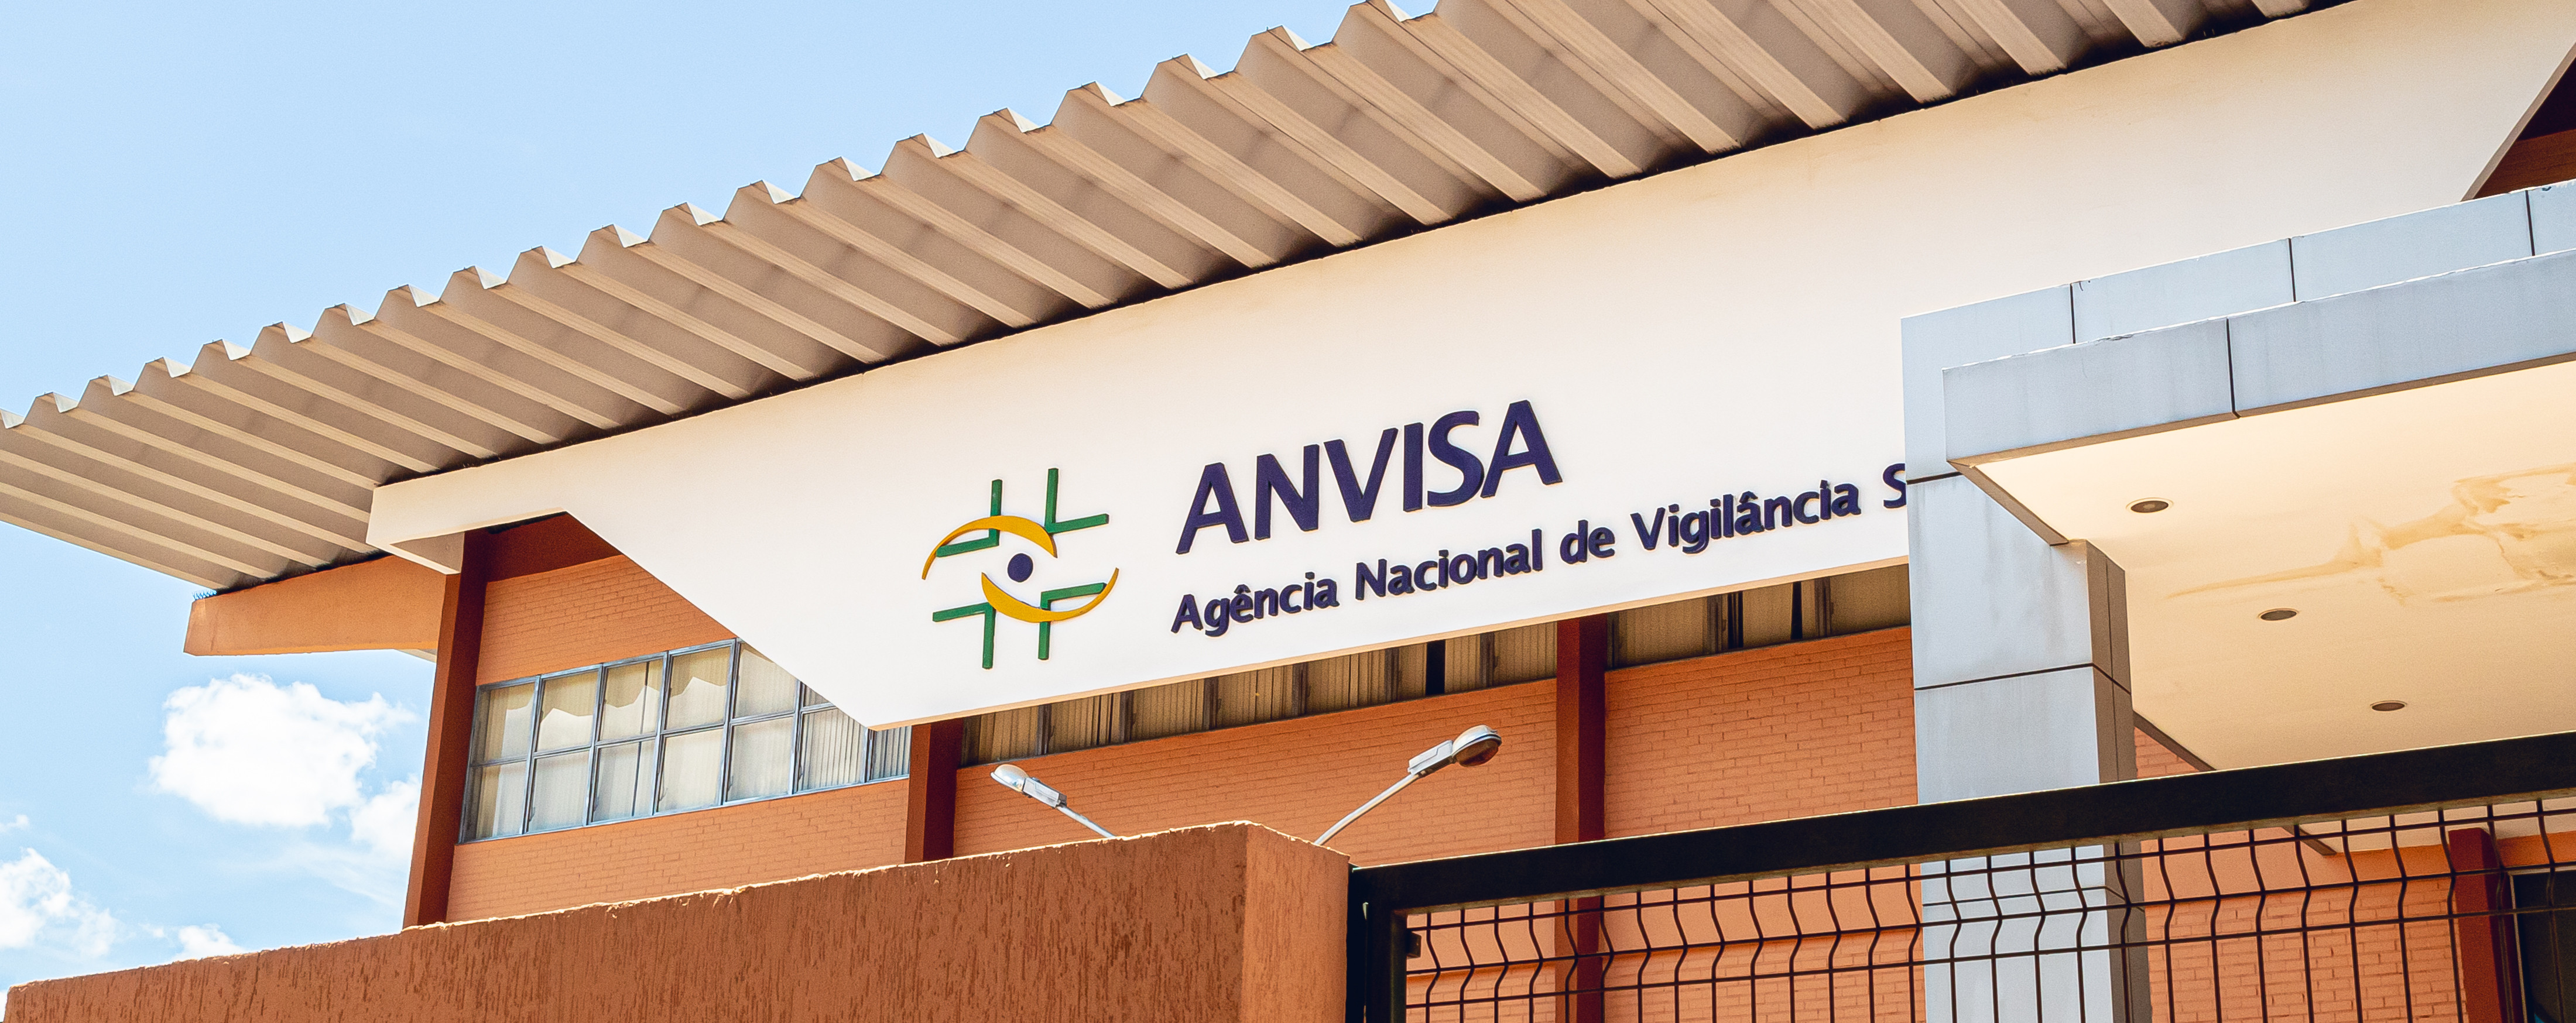 Em parceria com a ANVISA, o Hospital Alemão Oswaldo Cruz desenvolve ferramenta de gestão da qualidade em apoio às Vigilâncias Sanitárias de todo o país